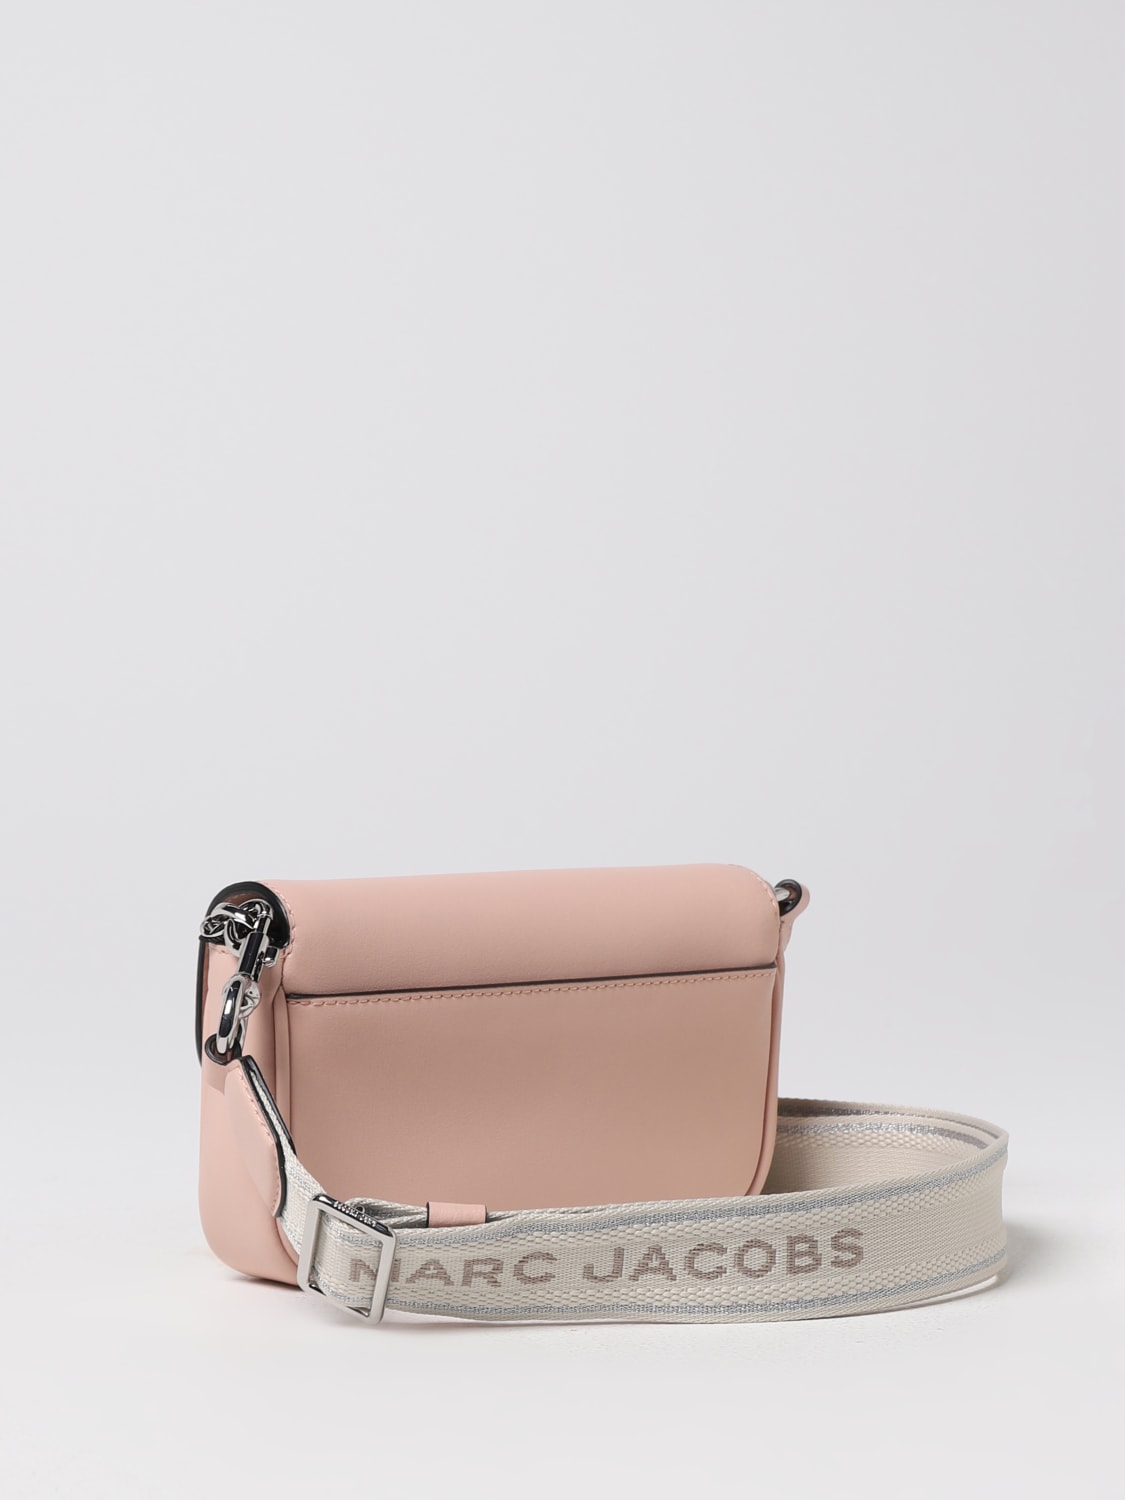 Marc Jacobs UK - Marc Jacobs Bag Sale UK - Marc Jacobs Outlet UK